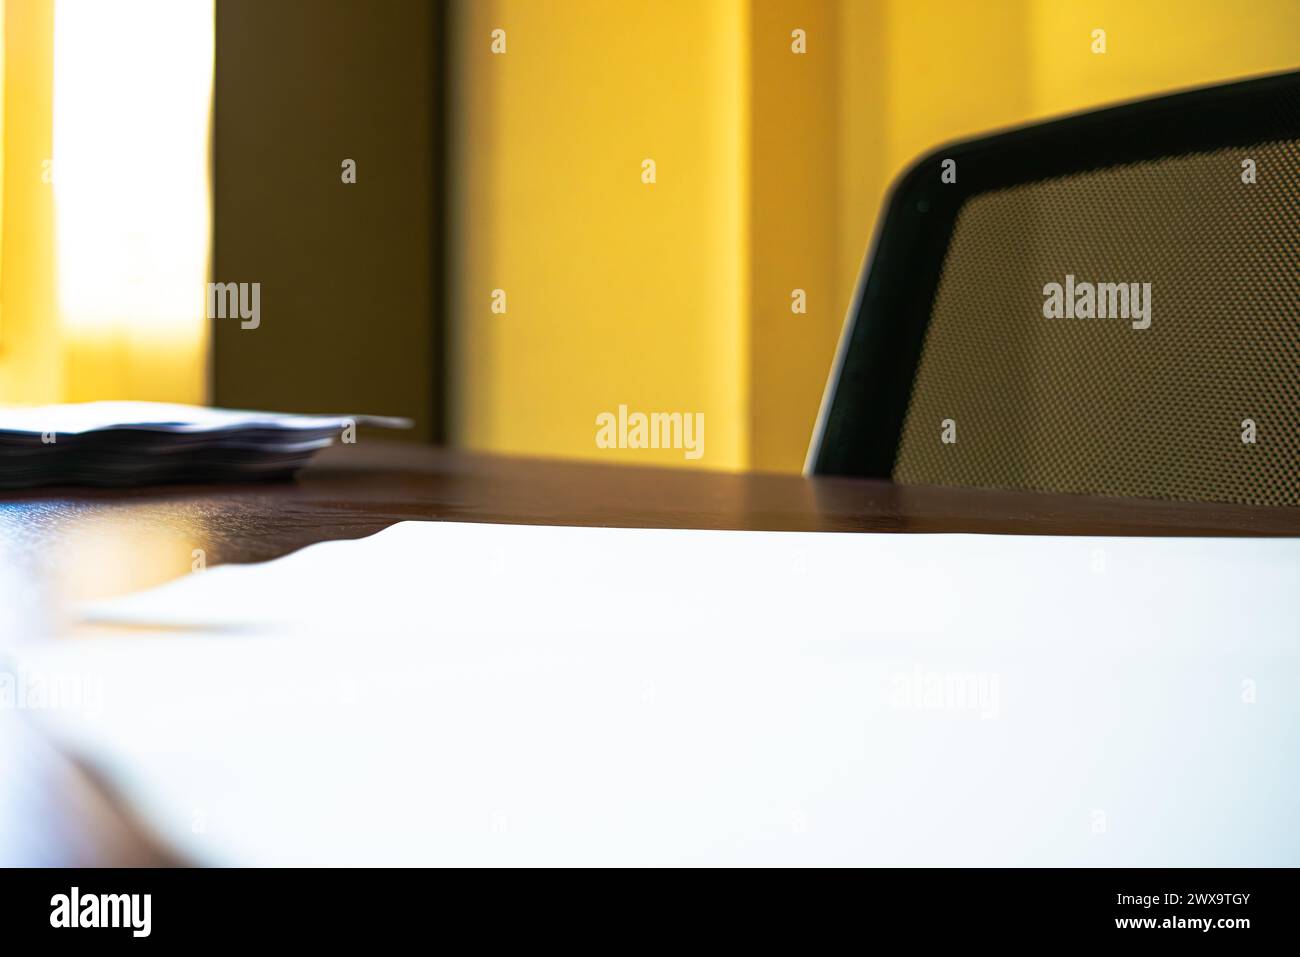 Una scrivania immacolata adornata con carta A4 bianca impilata, che crea uno spazio di lavoro organizzato ed efficiente per le attività professionali. Foto Stock